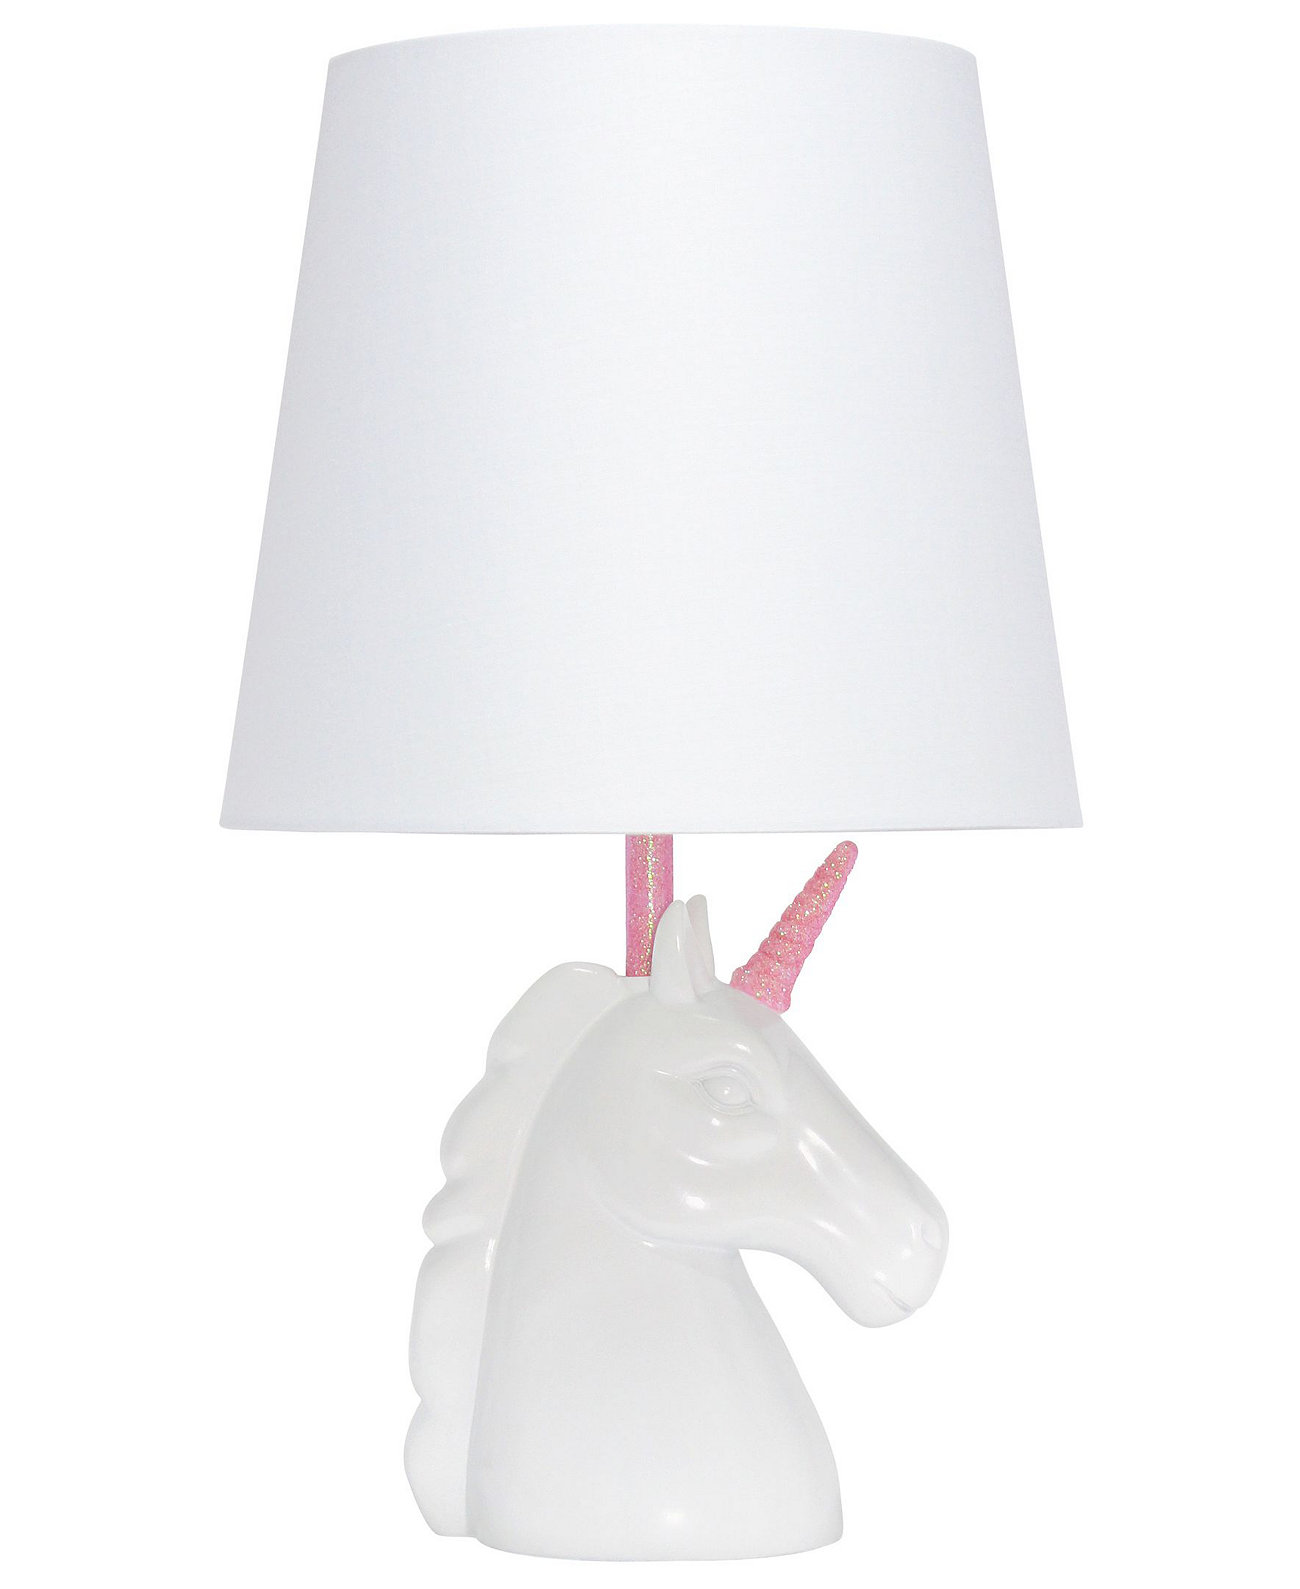 Настольная лампа Sparkling Unicorn Simple Designs